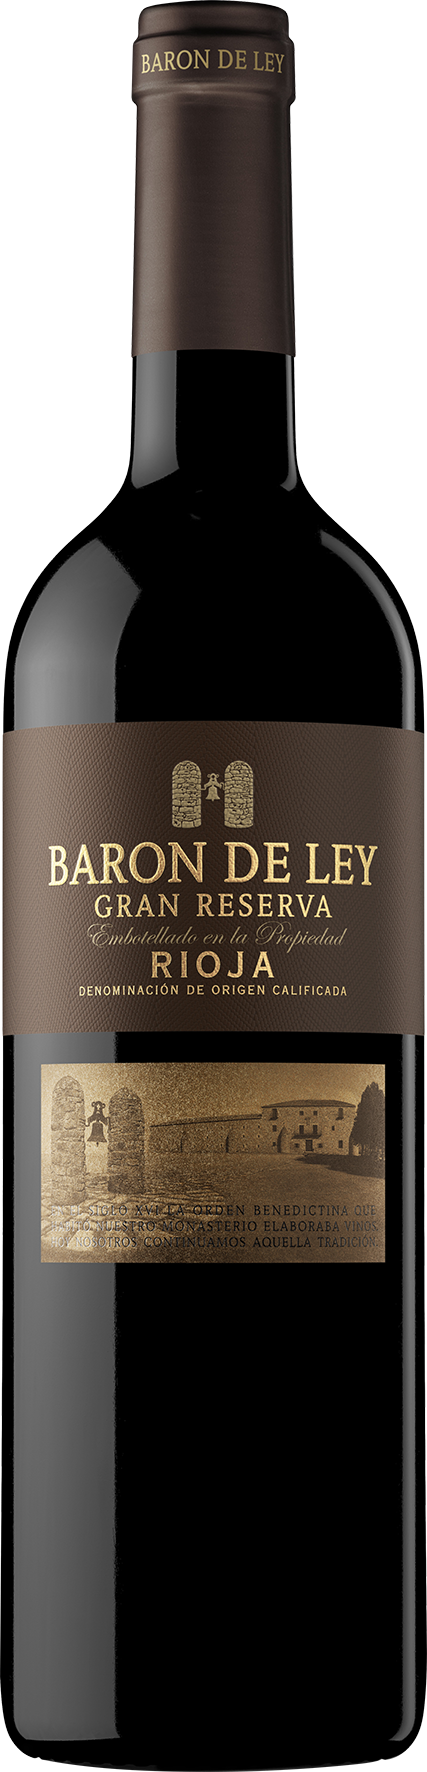 Baron de Ley Gran Reserva 0,75 L 2019